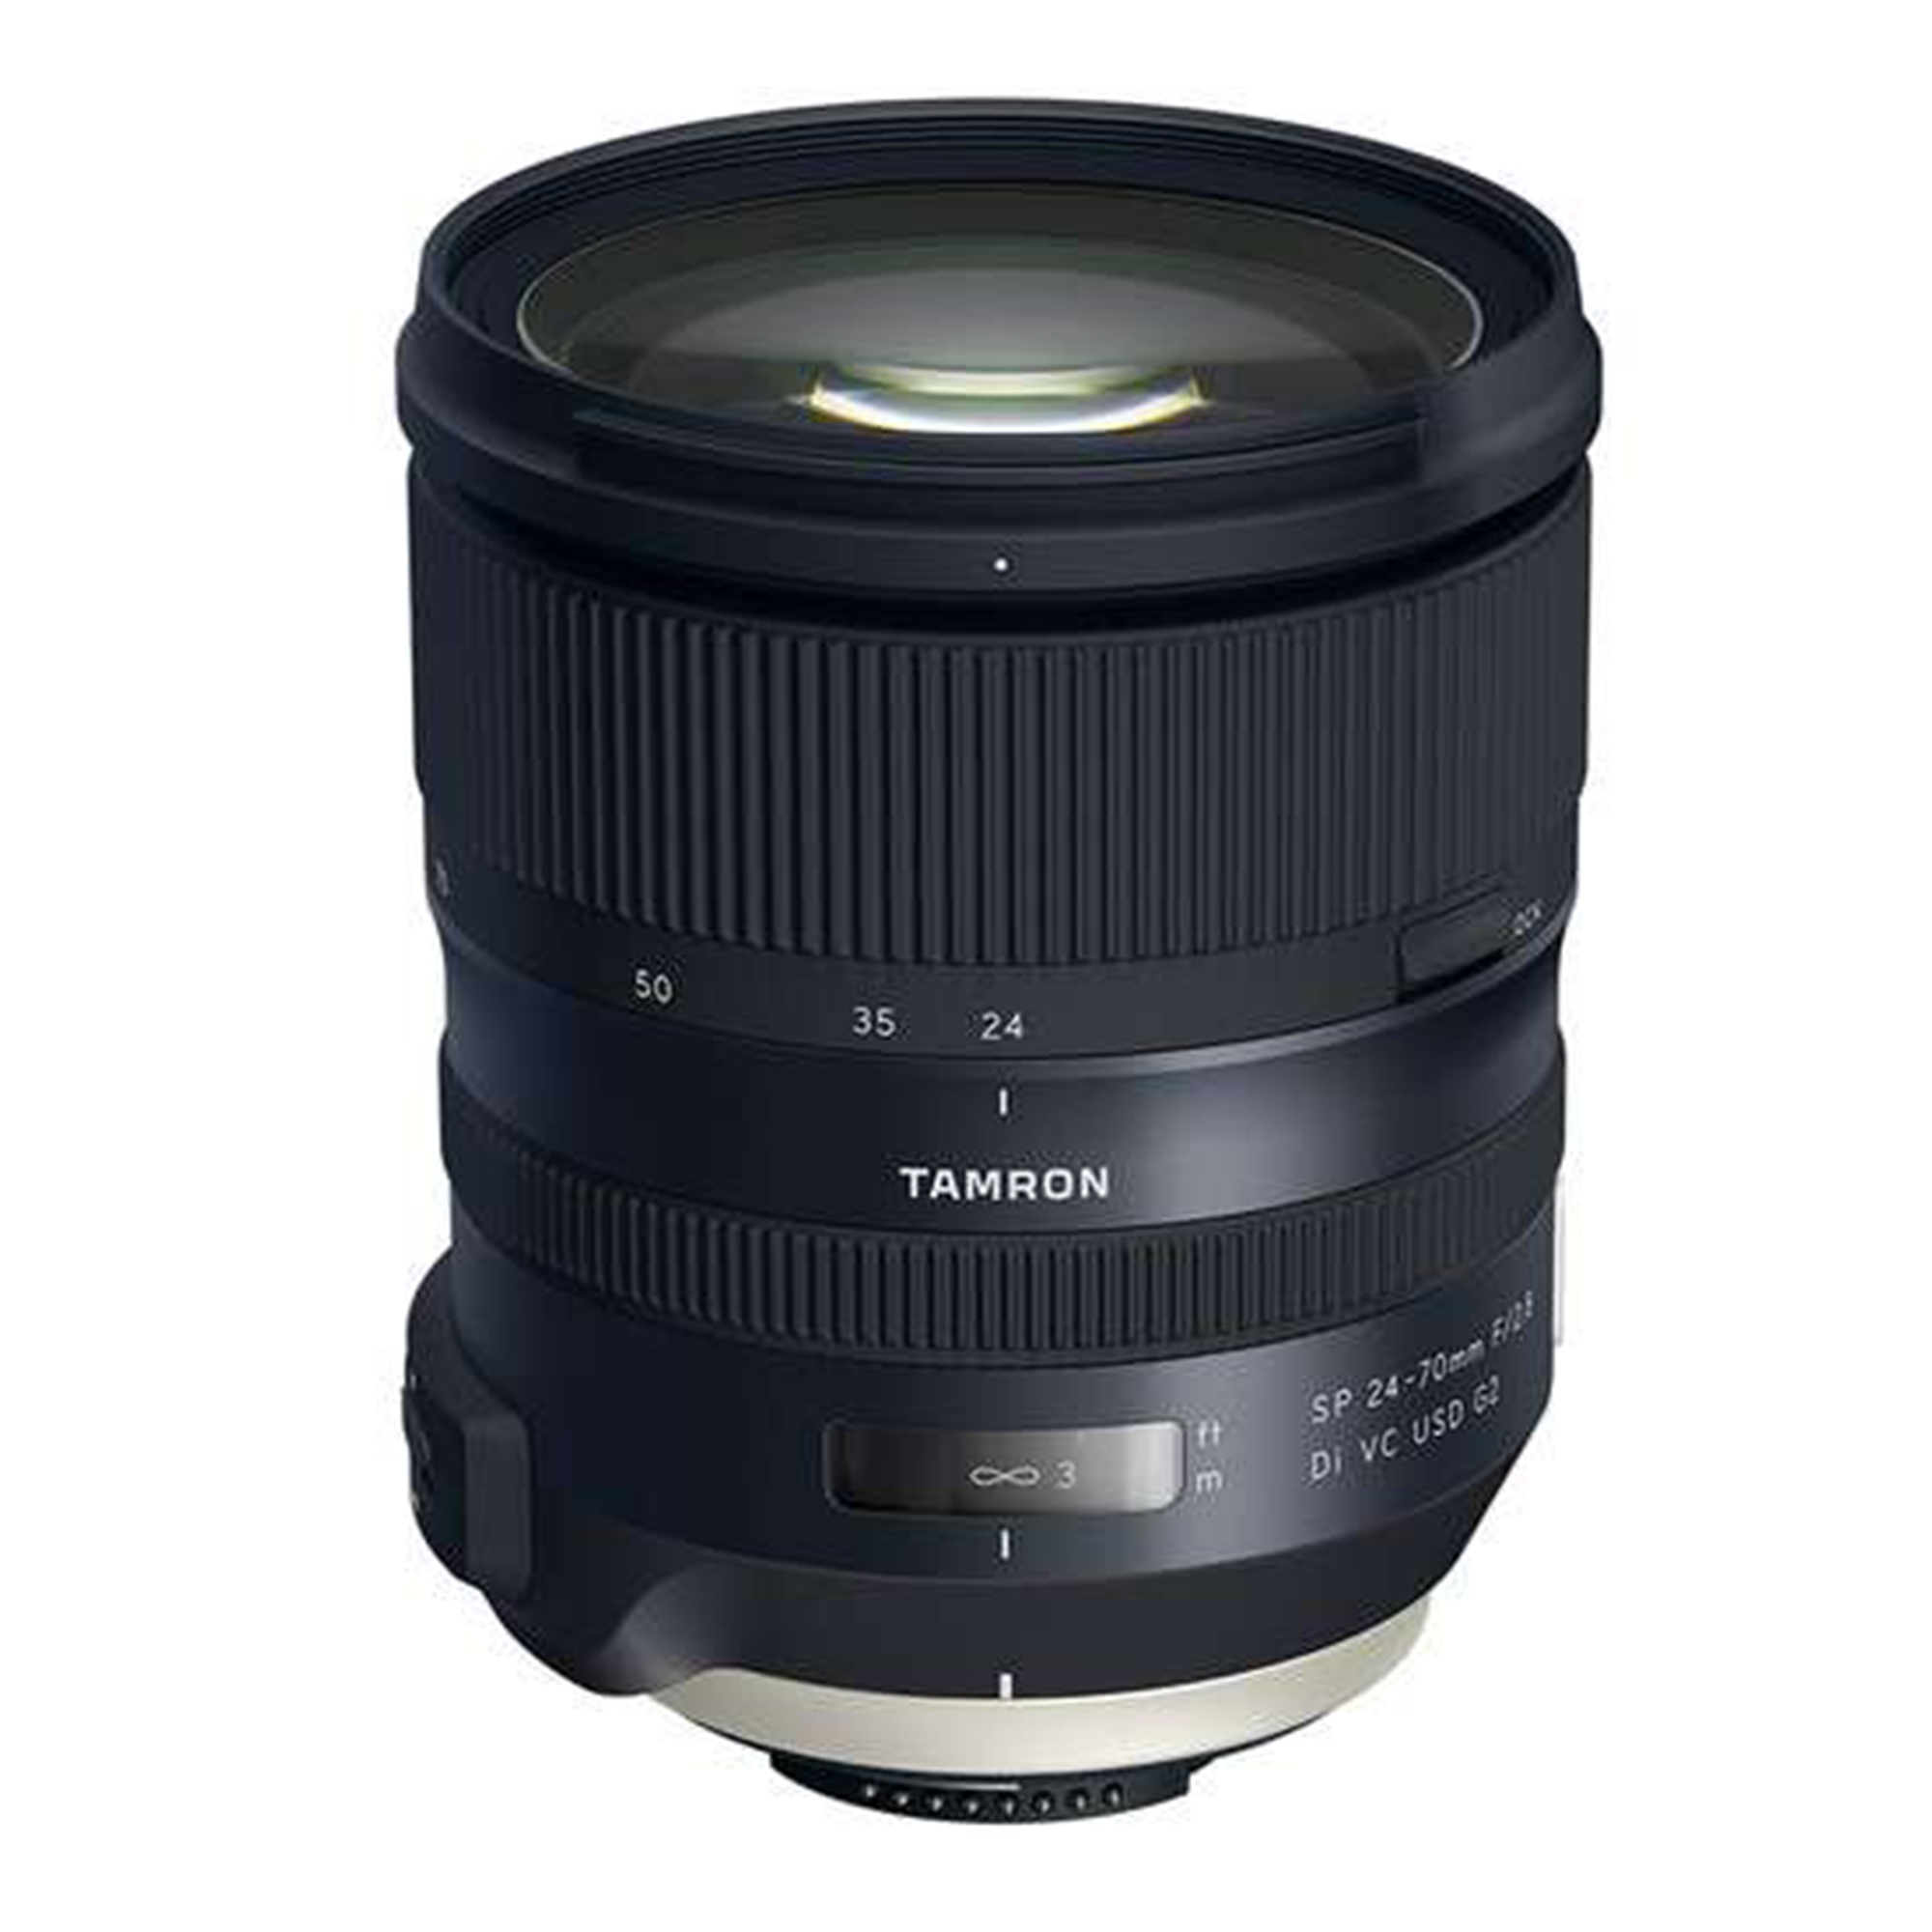 Tamron SP 24-70mm f/2.8 Di VC USD G2 Lens for Canon ِِEF